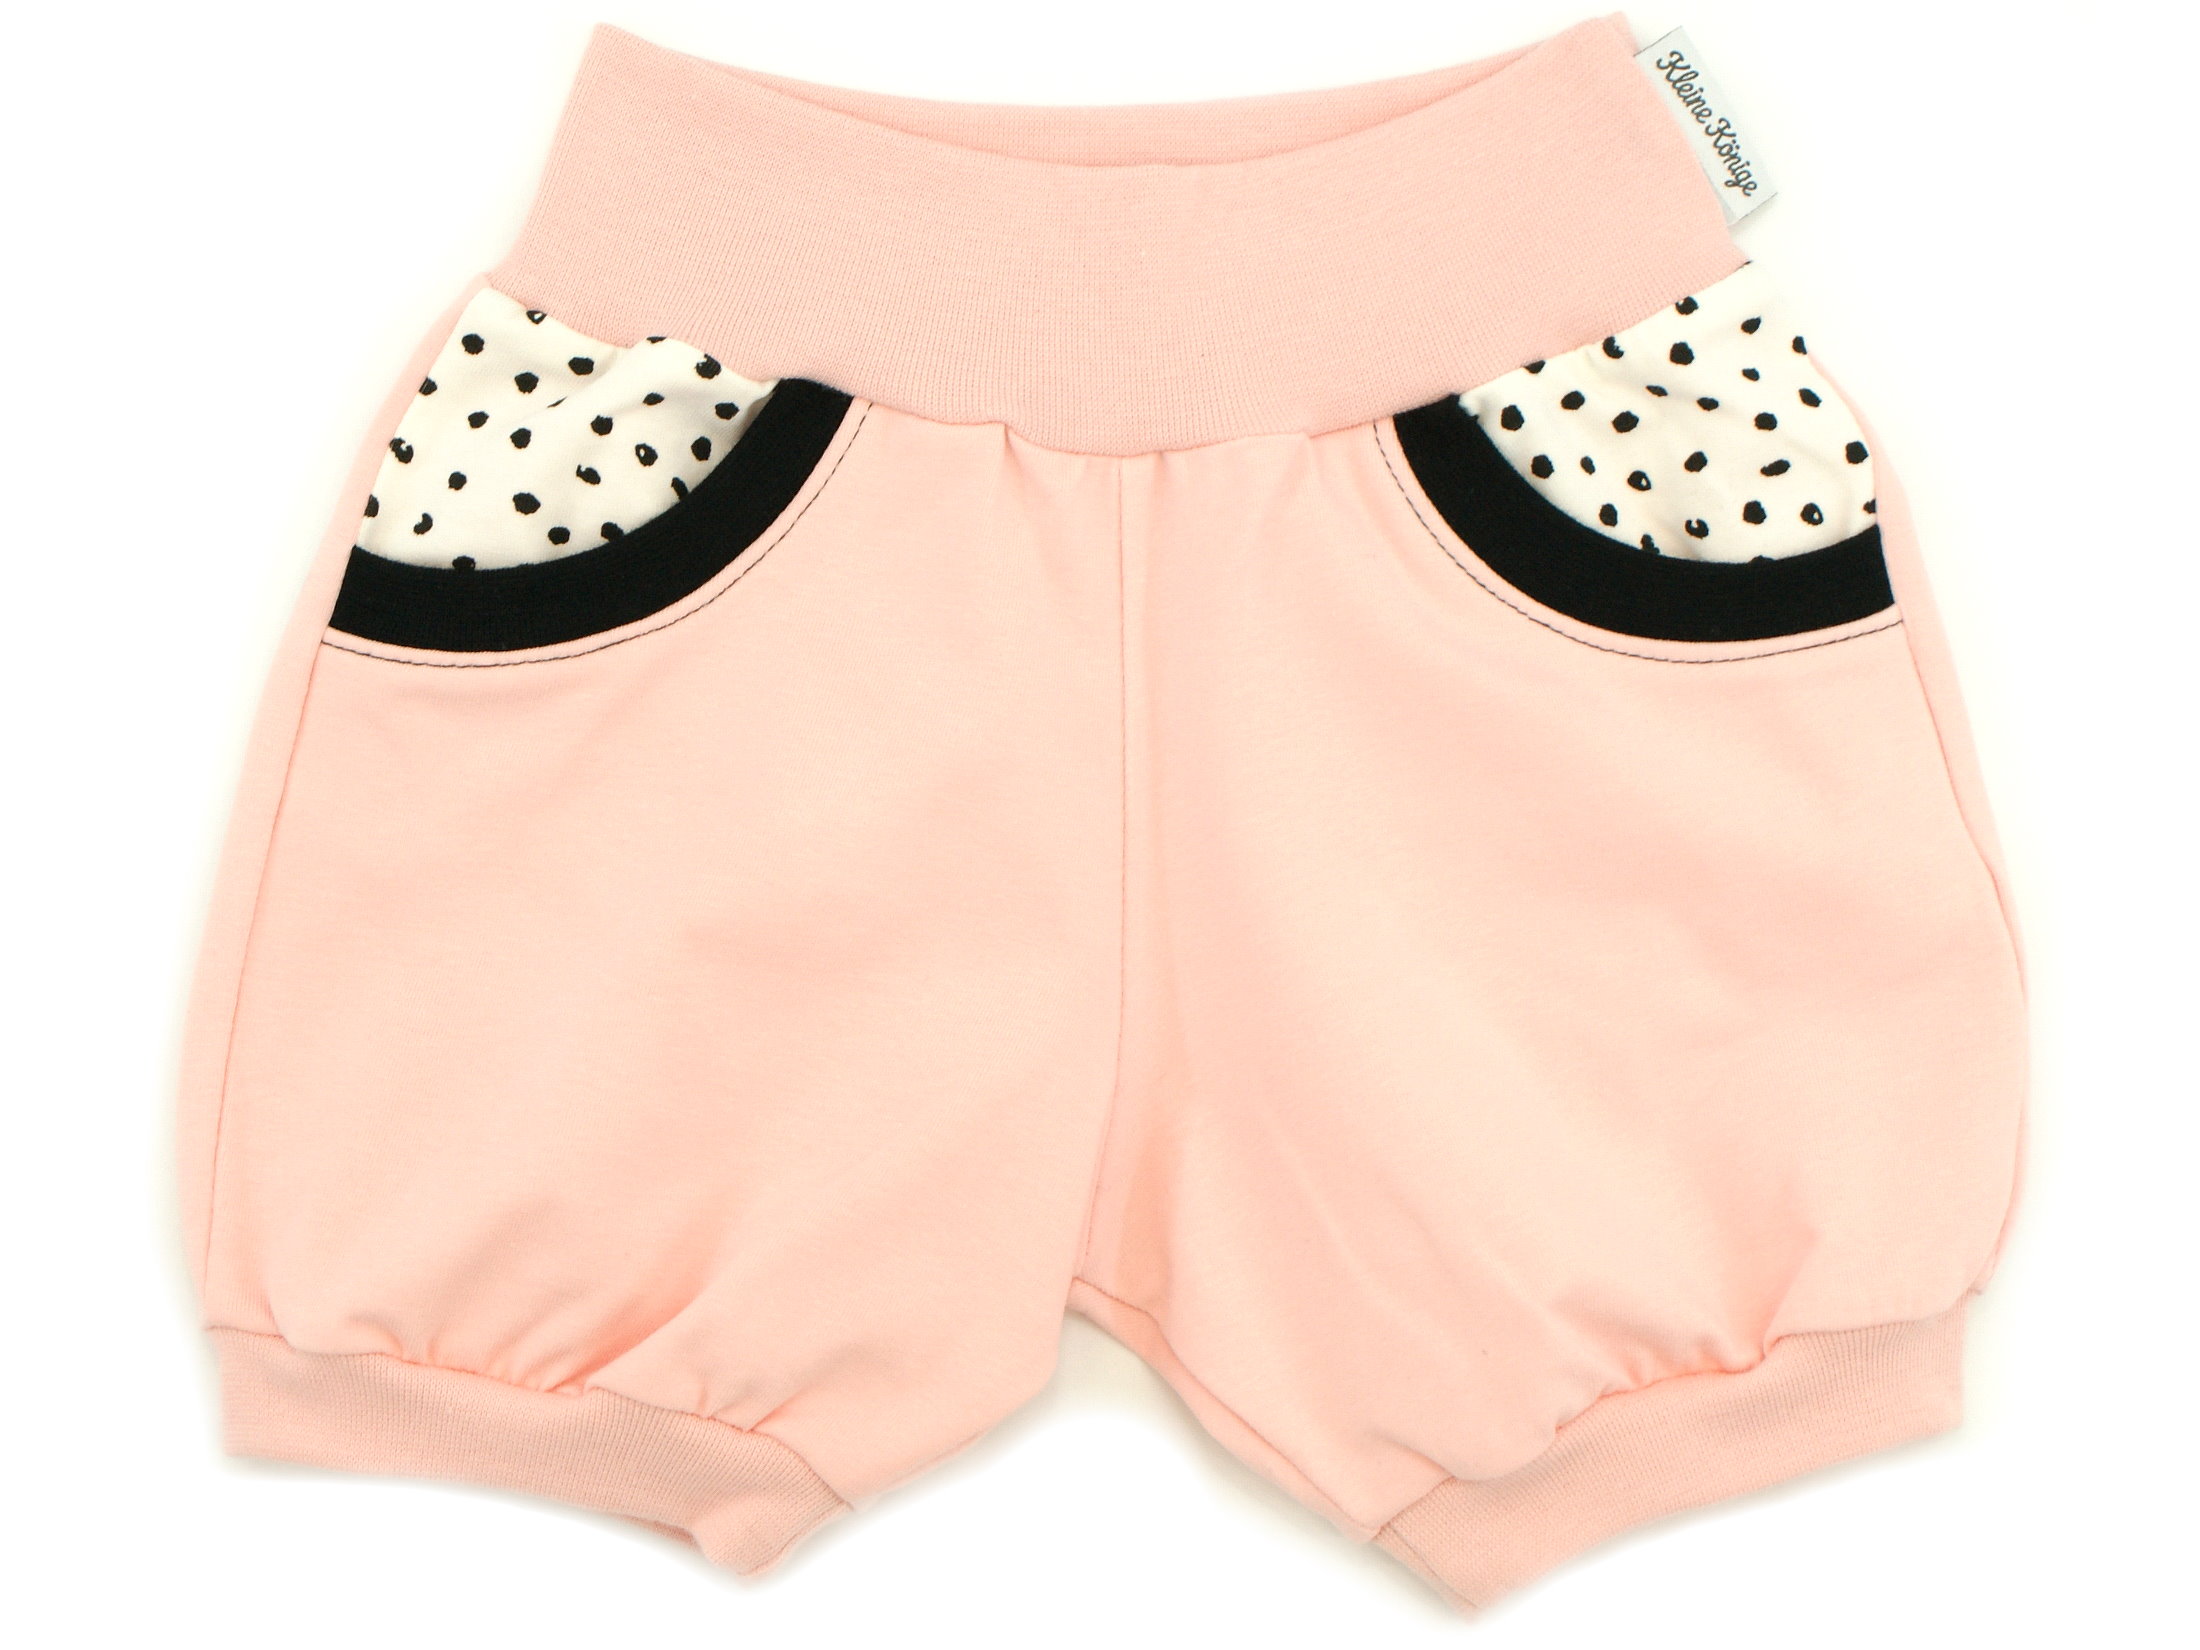 Kinder Sommer Shorts mit Taschen "Little Dots" creme altrosa